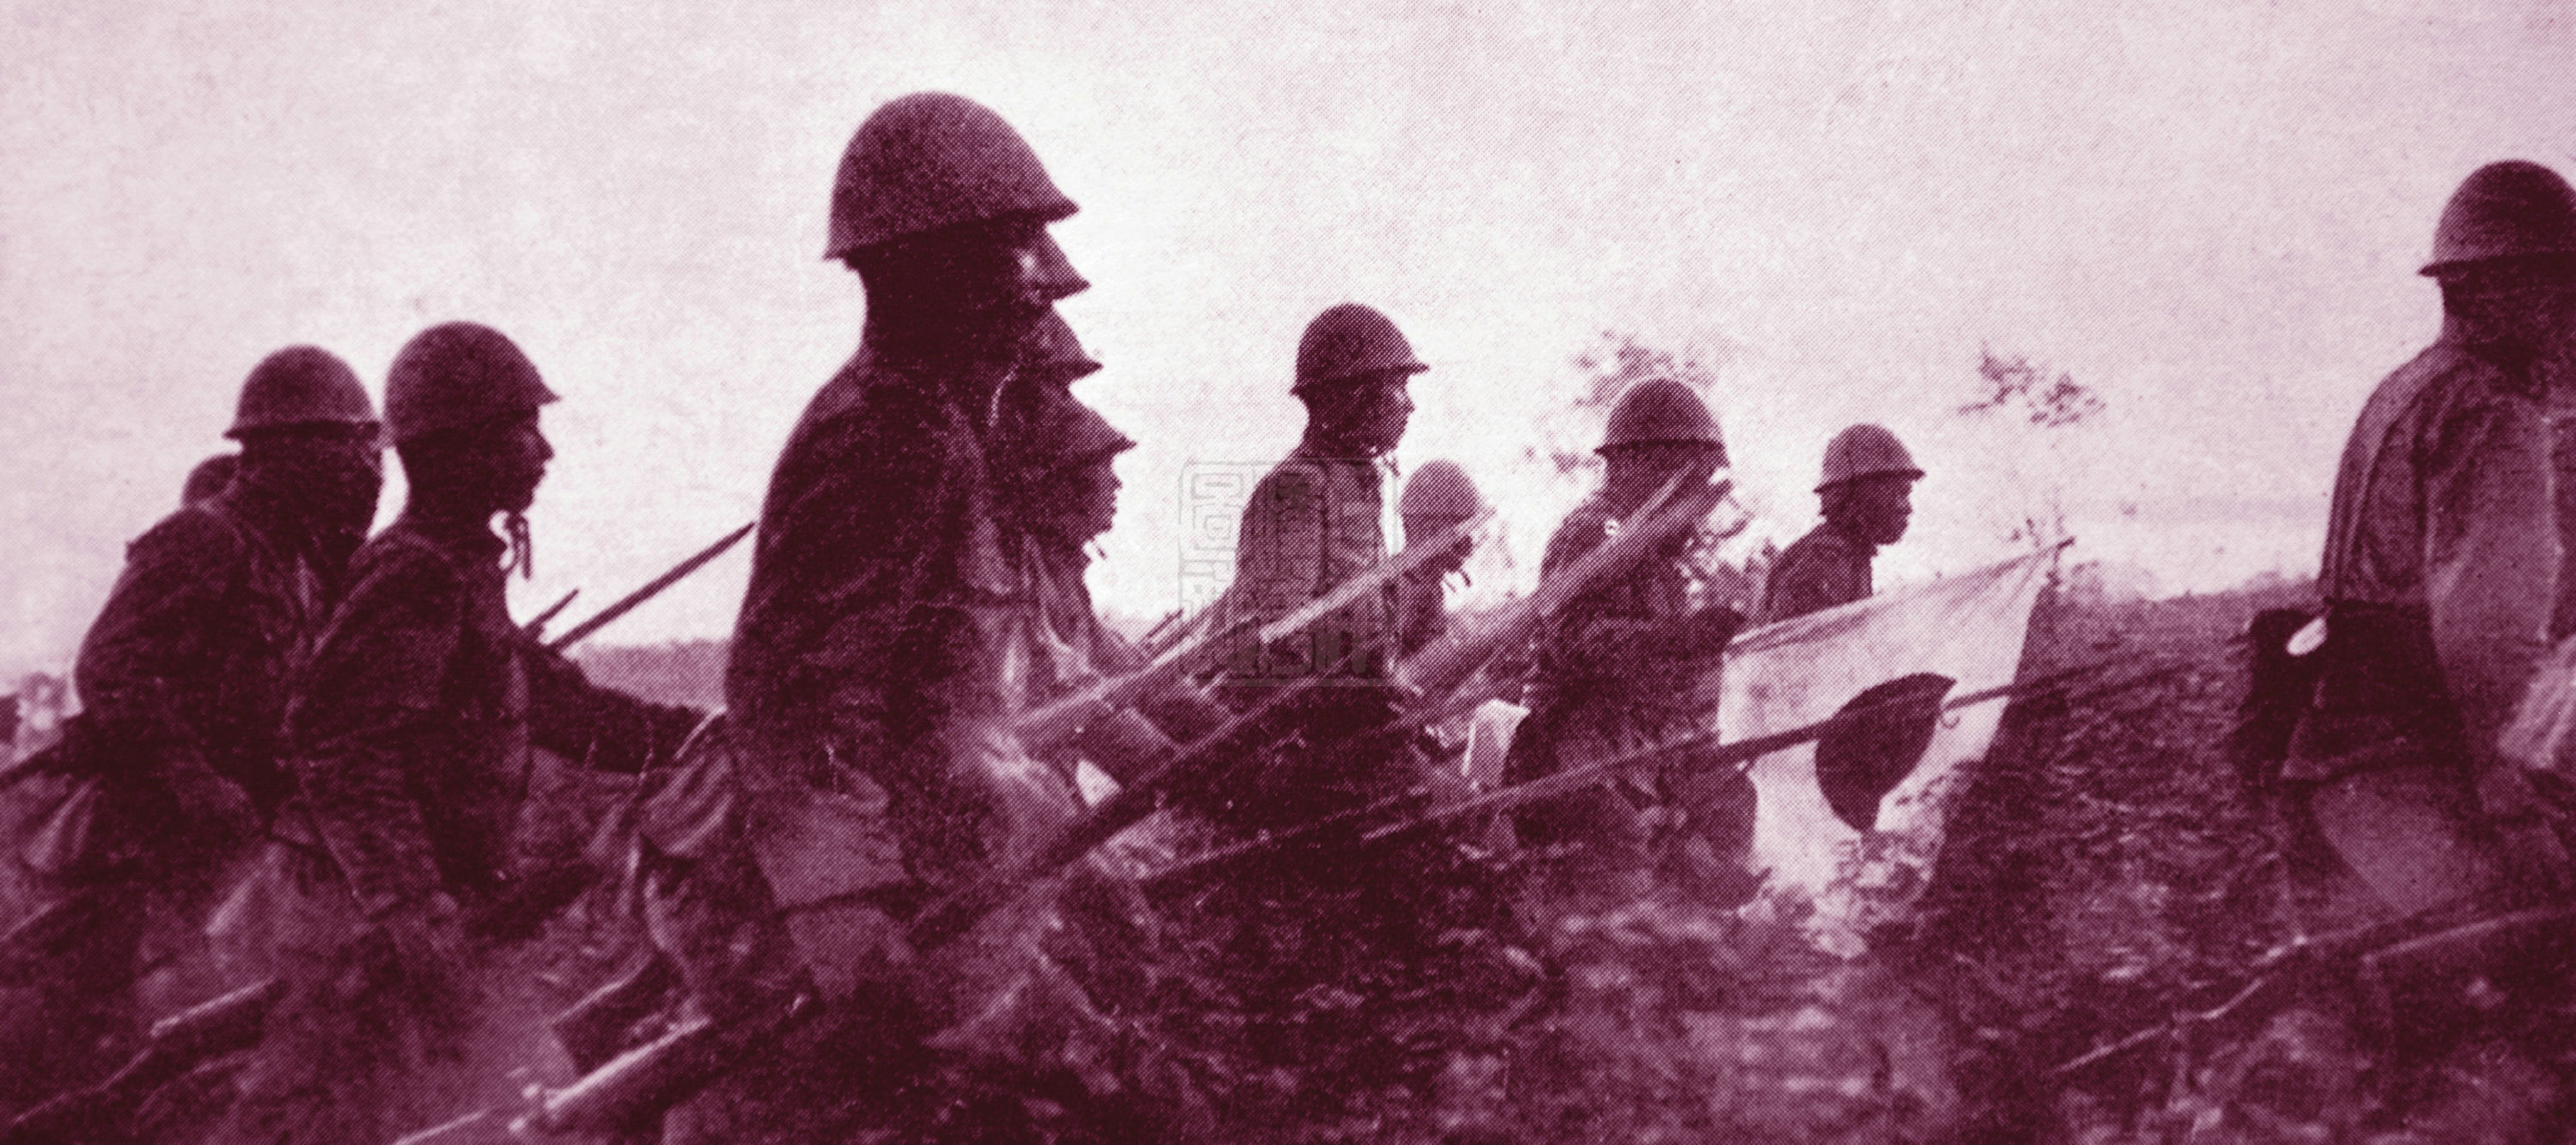 河北大地上遍布日军铁蹄:一组侵华日军在河北大扫荡的原始照片